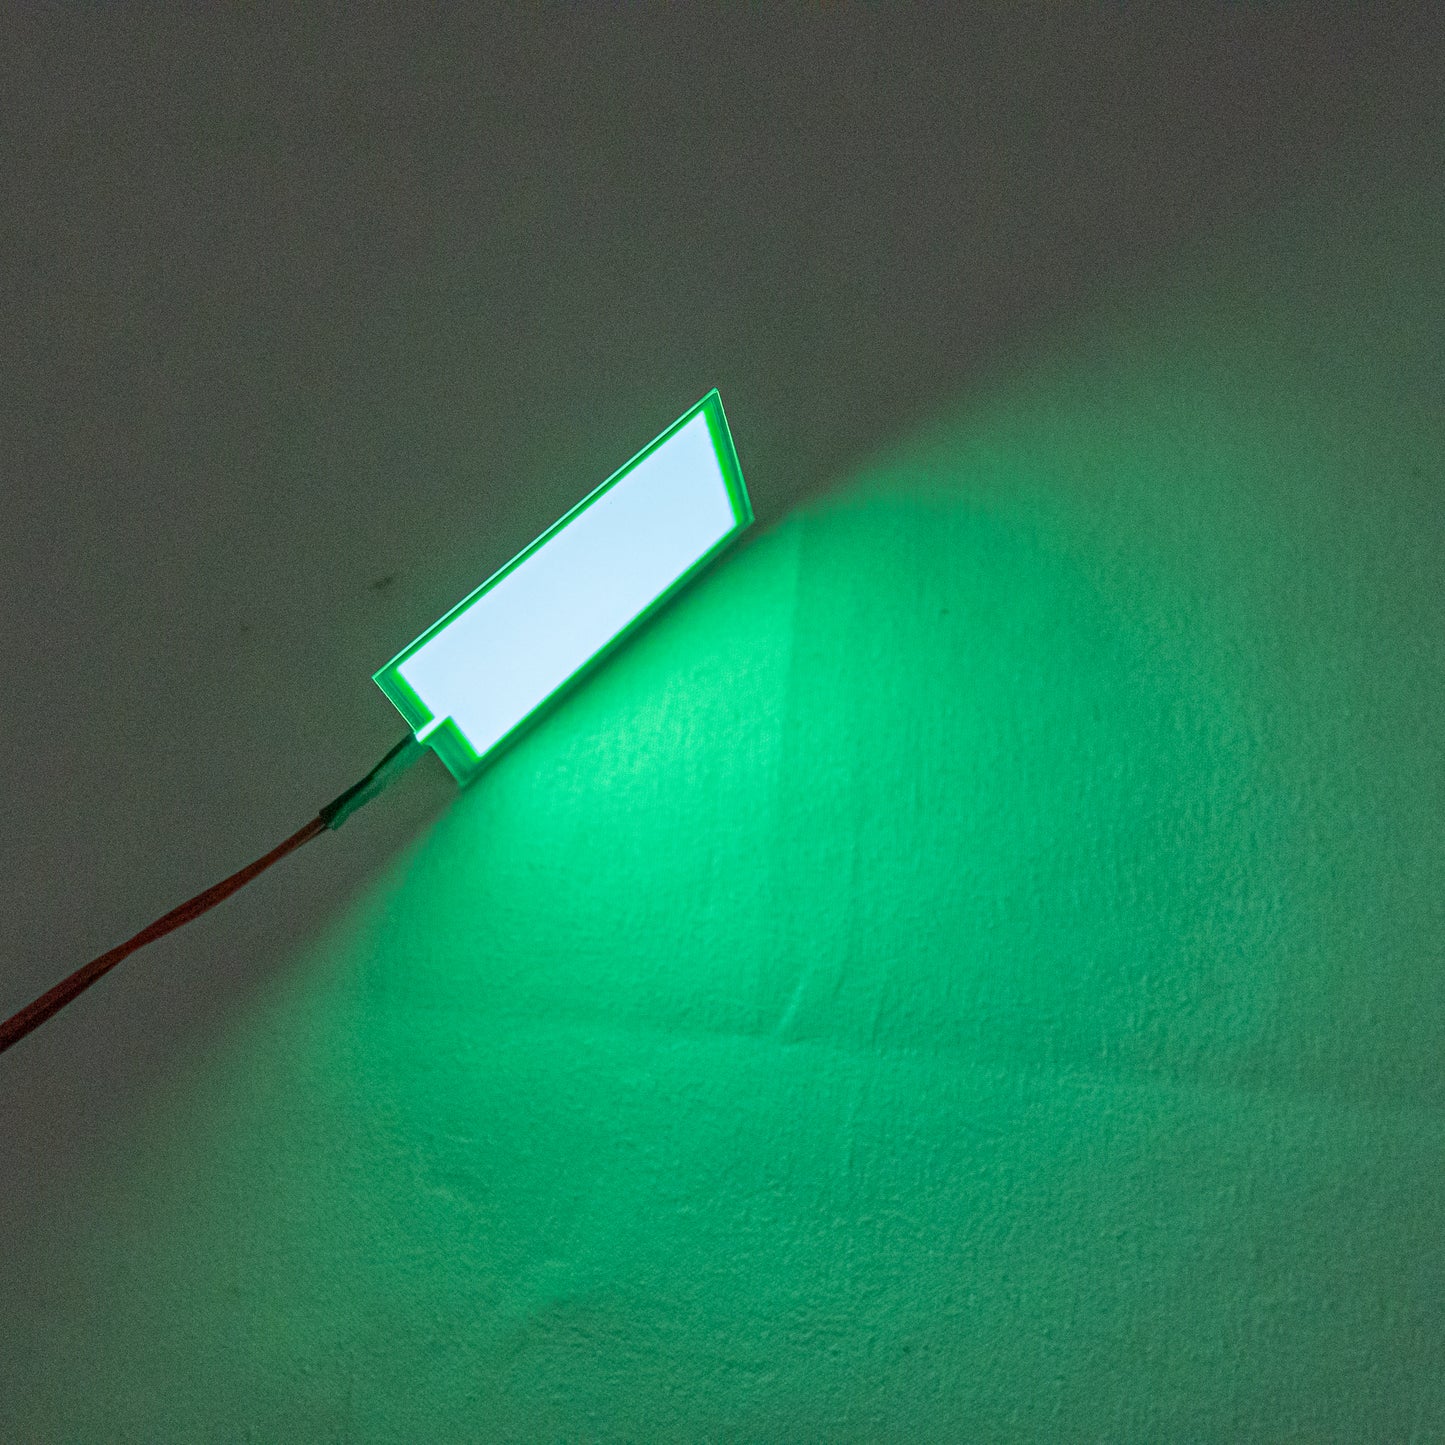 FSLiving EL照明 有機EL照明パネル 5CM*5CM DIY ELシート ゲーム機バックライト化 クリスマス パーティー デコレーション 3V 電池式 緑